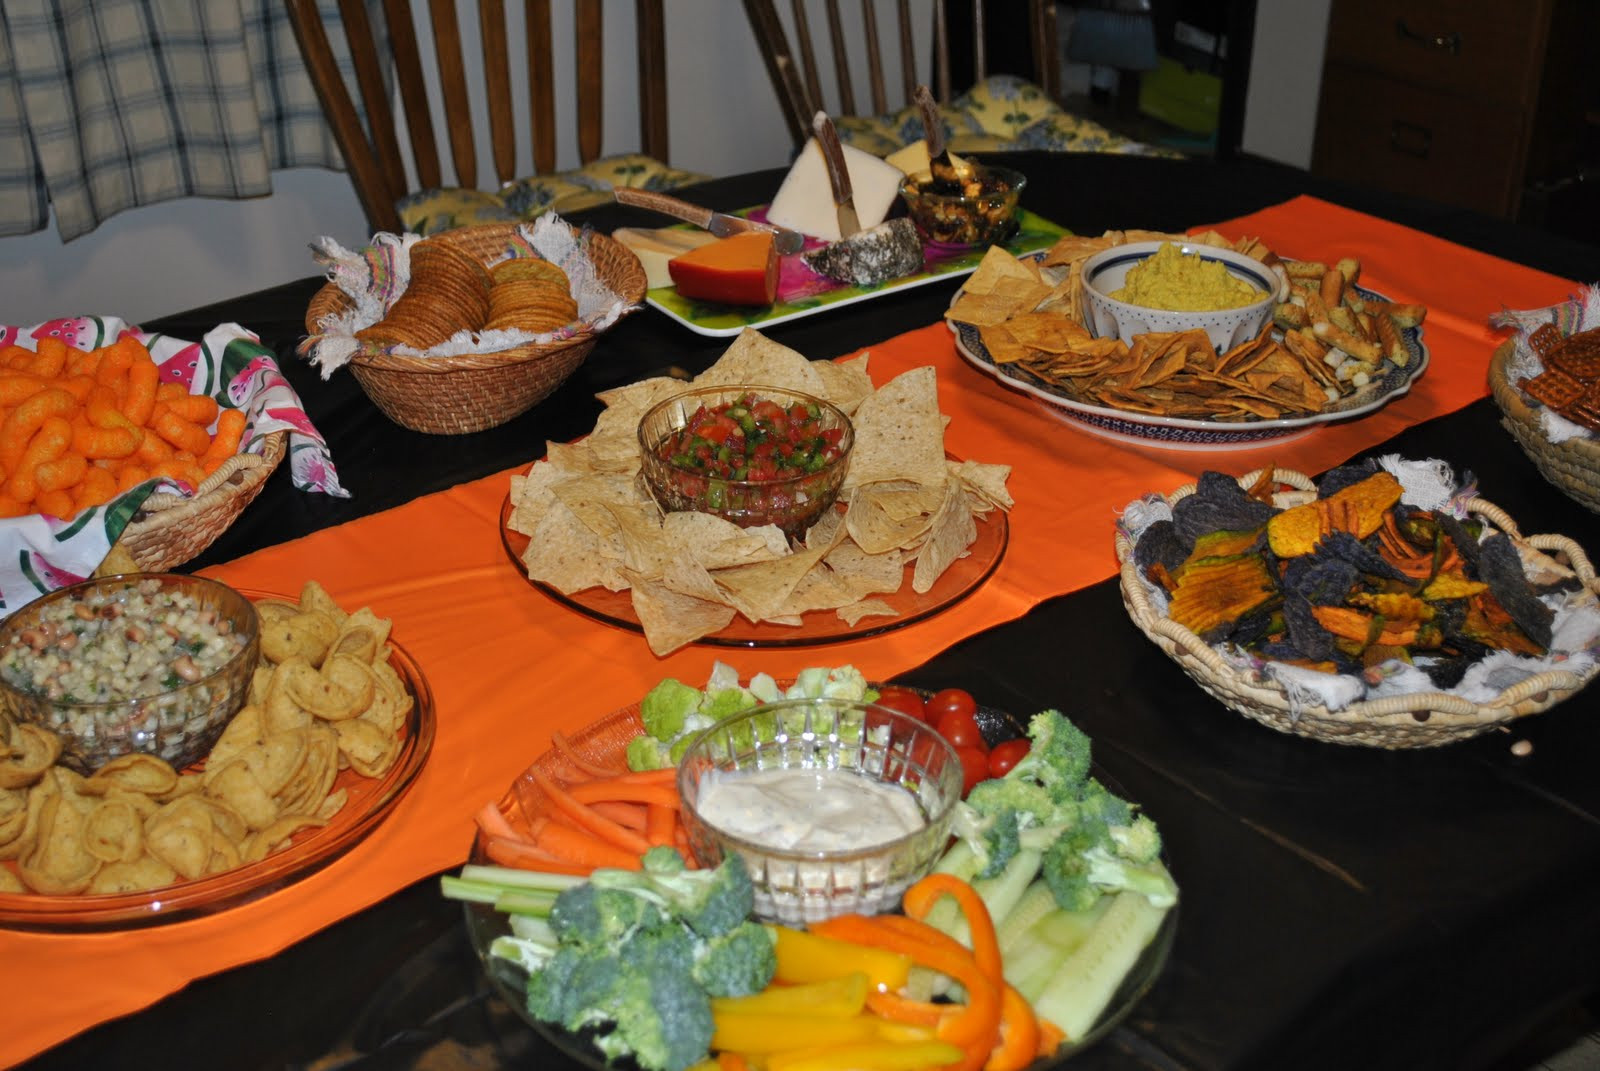 Food Ideas For High School Graduation Party
 Domestic Congrats grad